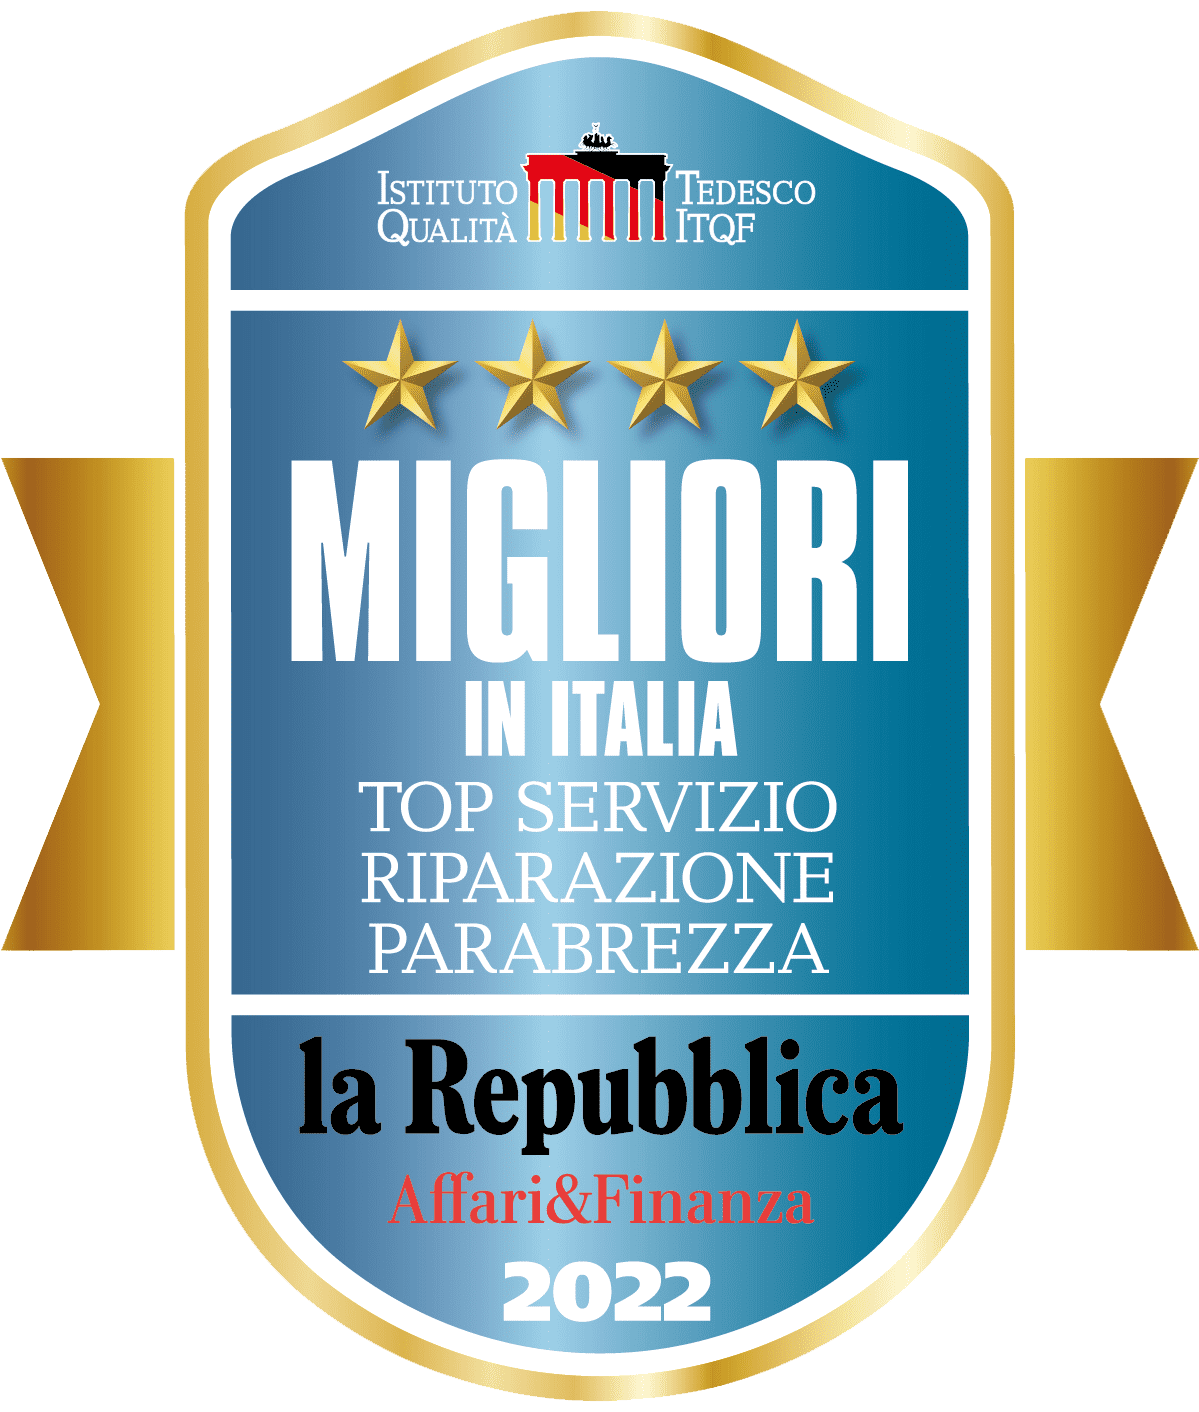 MIGLIOR-IN-ITALIA-TOP-SERVIZIO-PARABREZZA